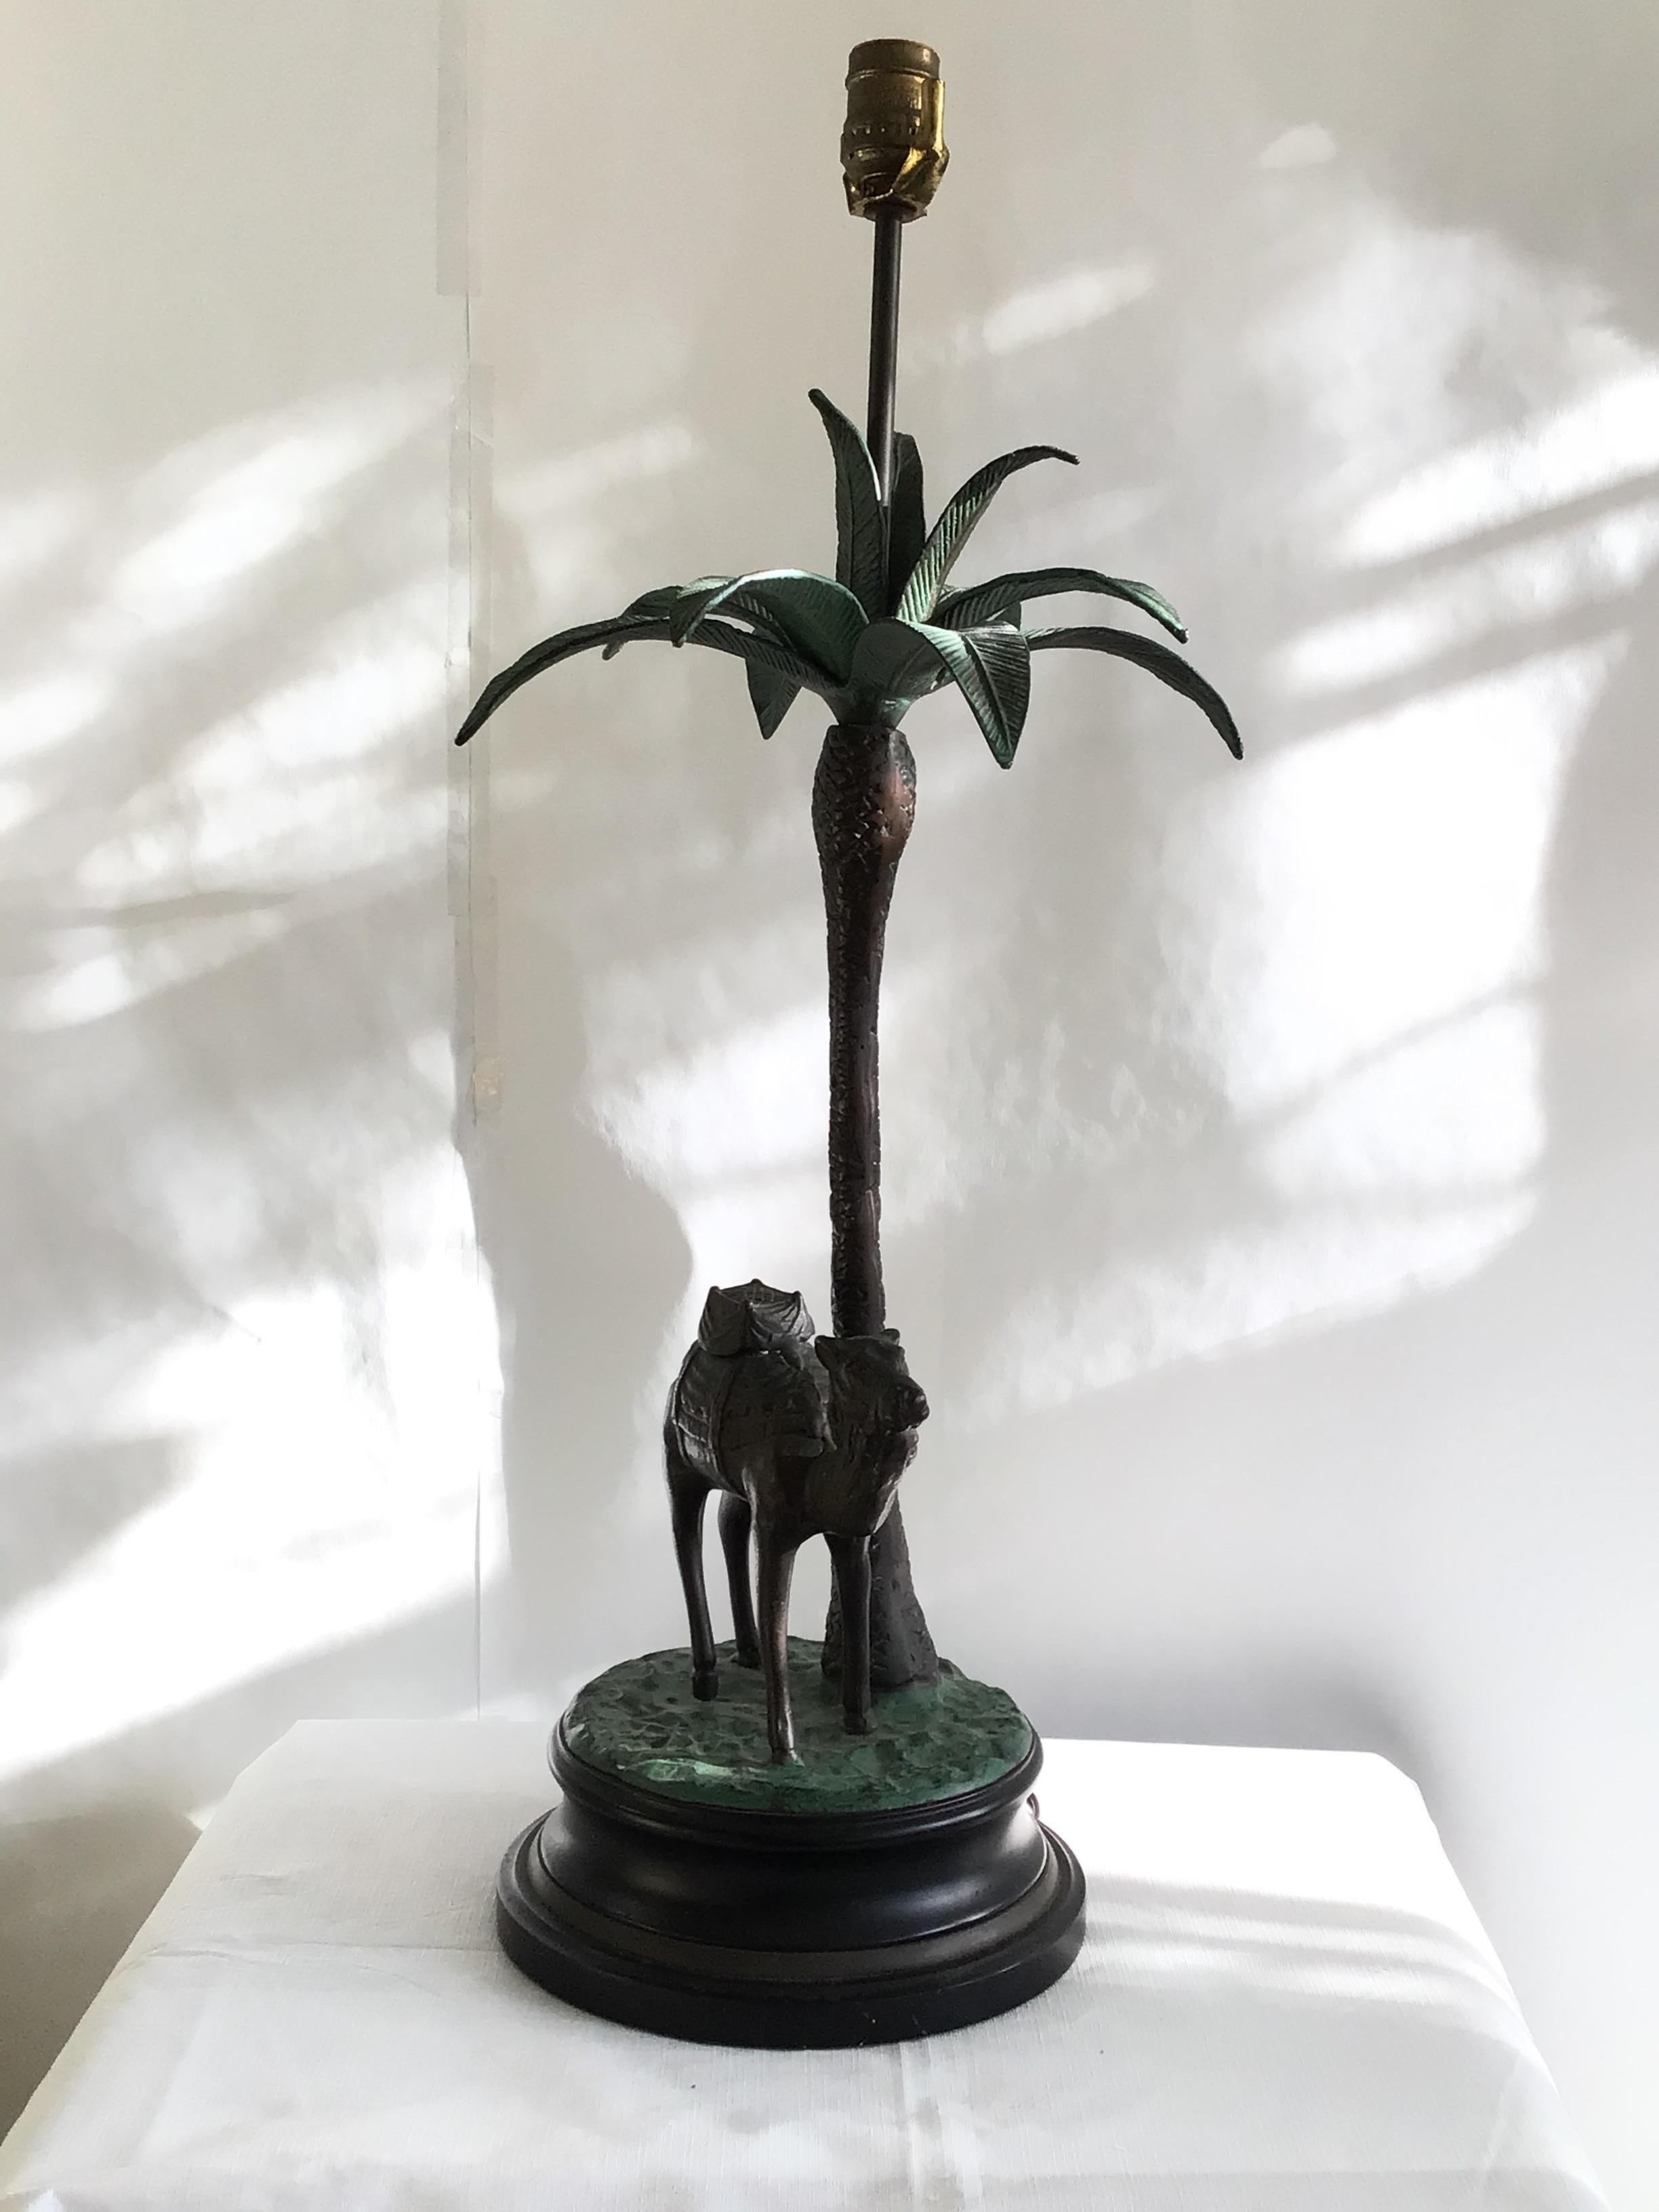 Lampe de table décorative des années 1950 avec chameau et palmiers sur base en bois et métal
Pose classique sous un palmier, joliment mise à l'échelle en laiton coulé lourd et ancien.
Certaines feuilles et le fond de la base sont peints.
La